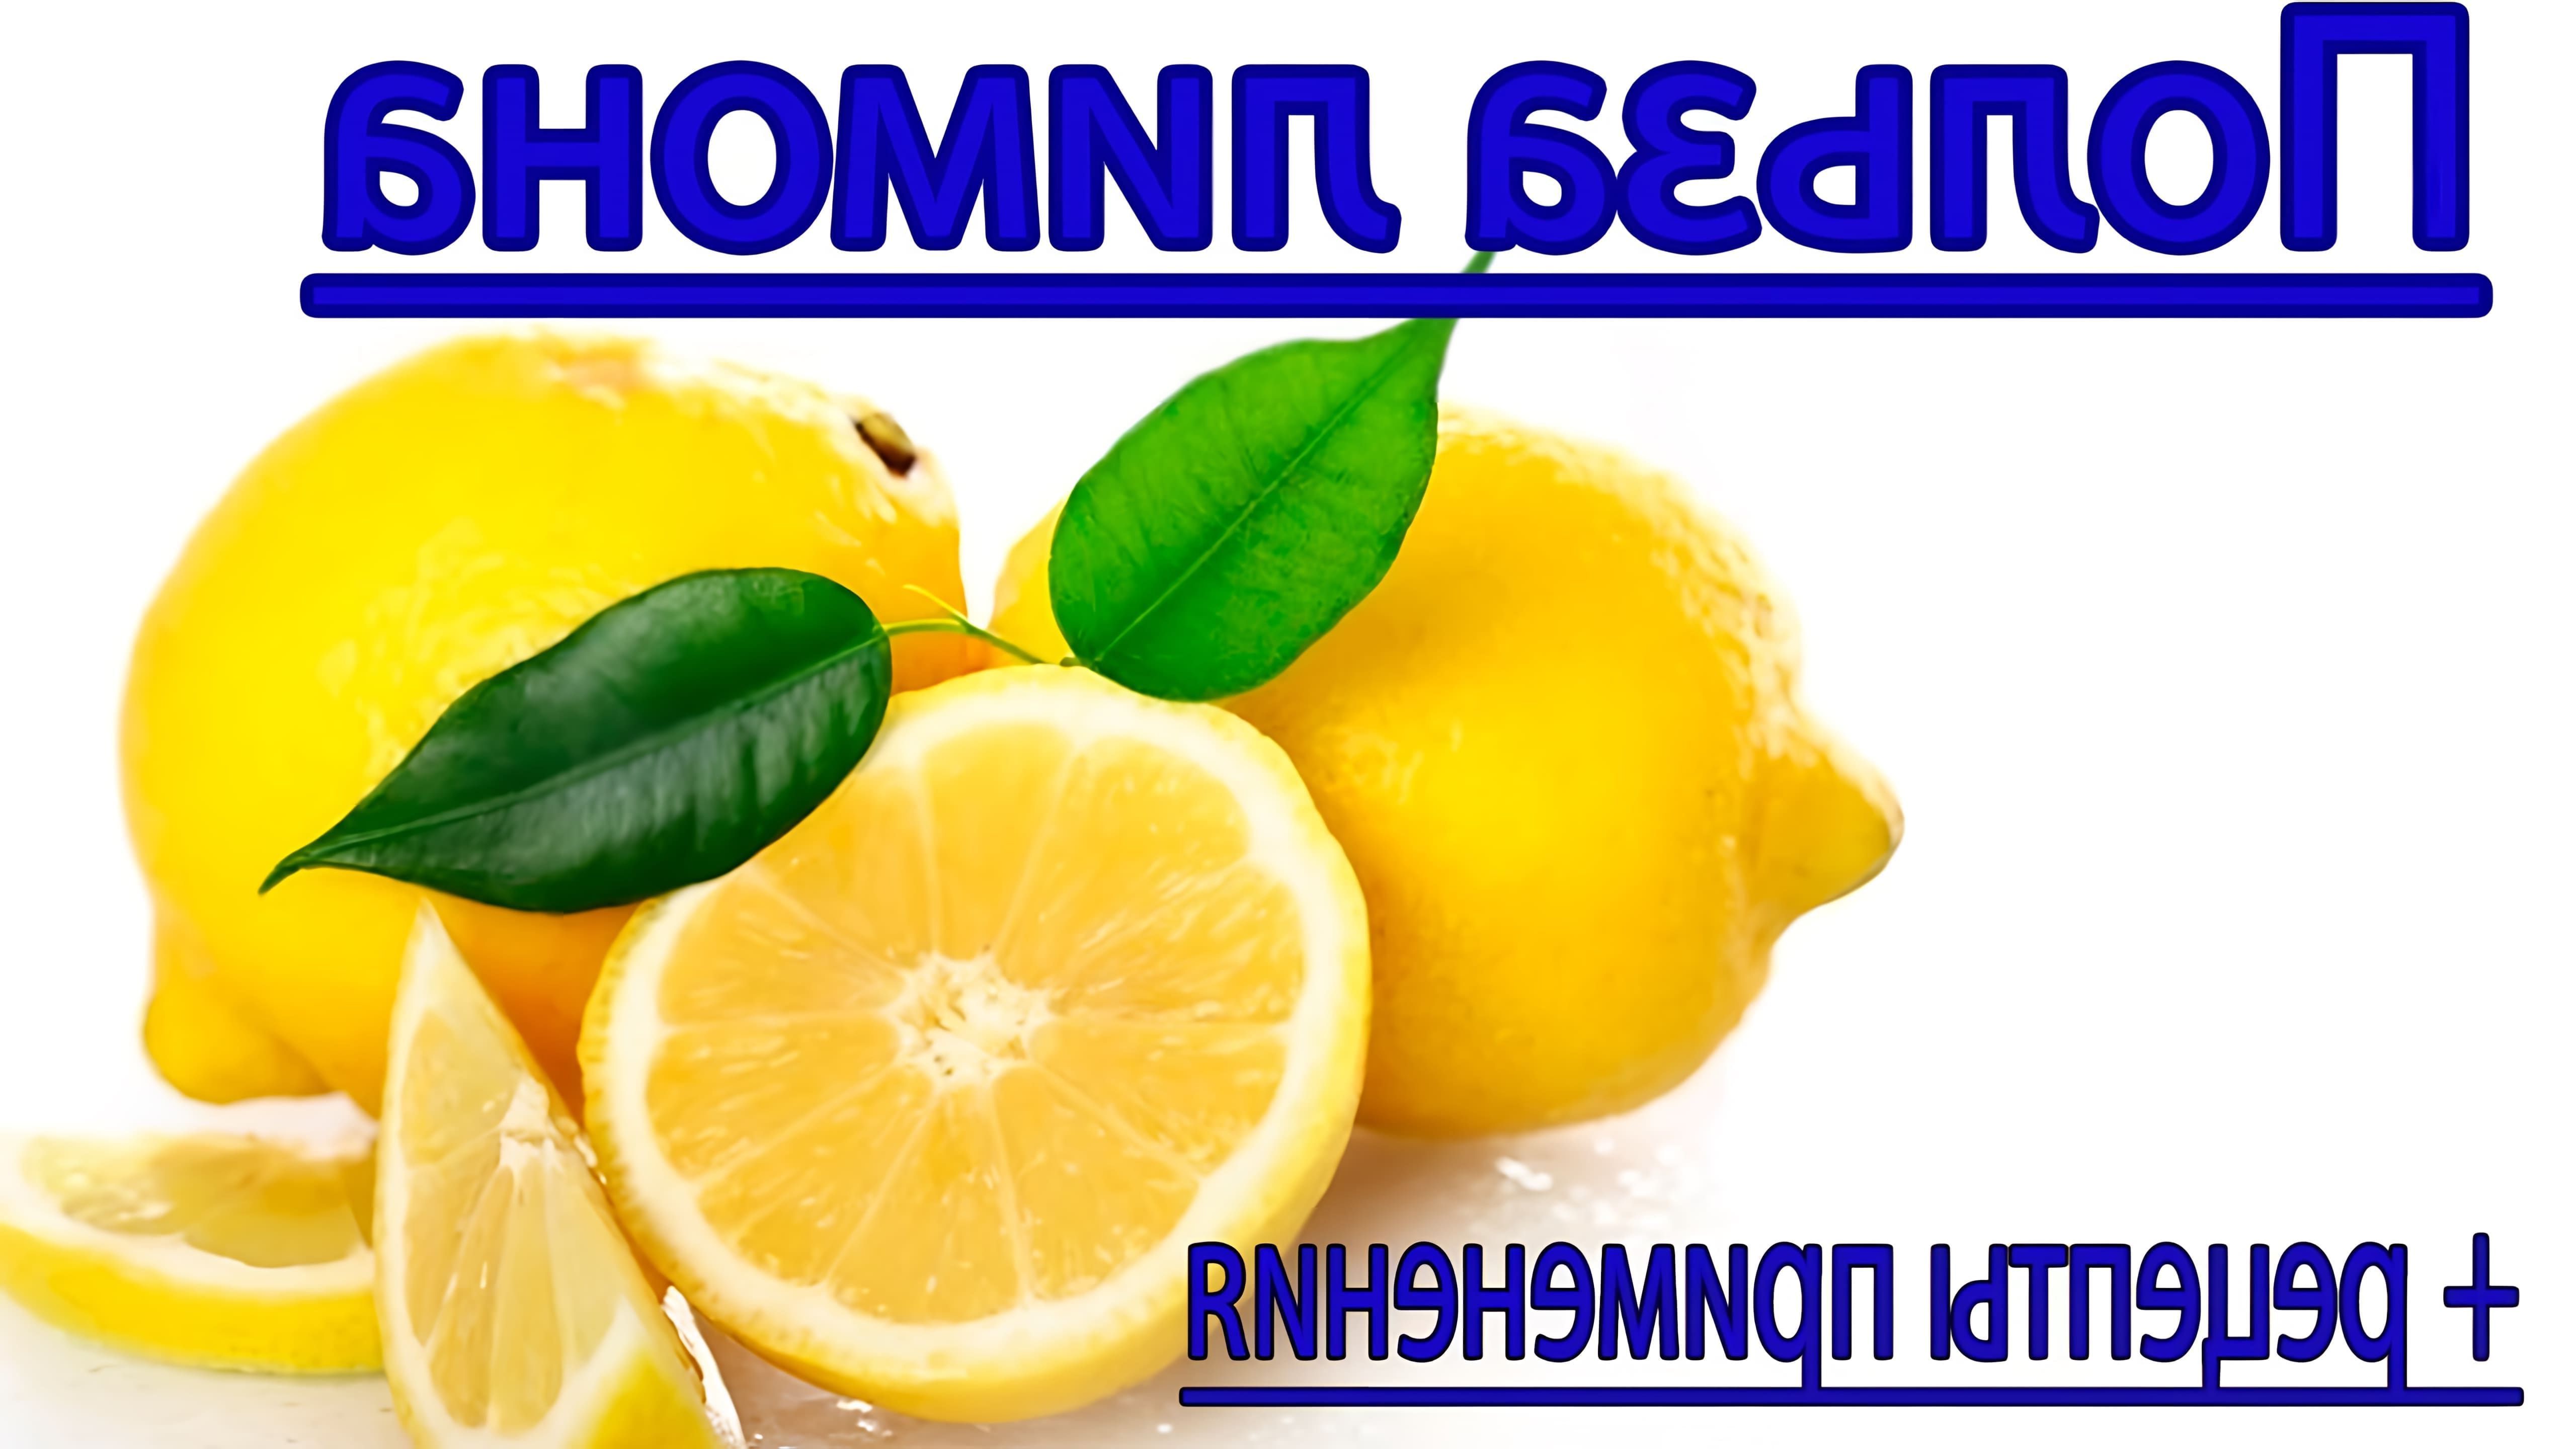 Лимон - это фрукт, который обладает множеством полезных свойств для организма